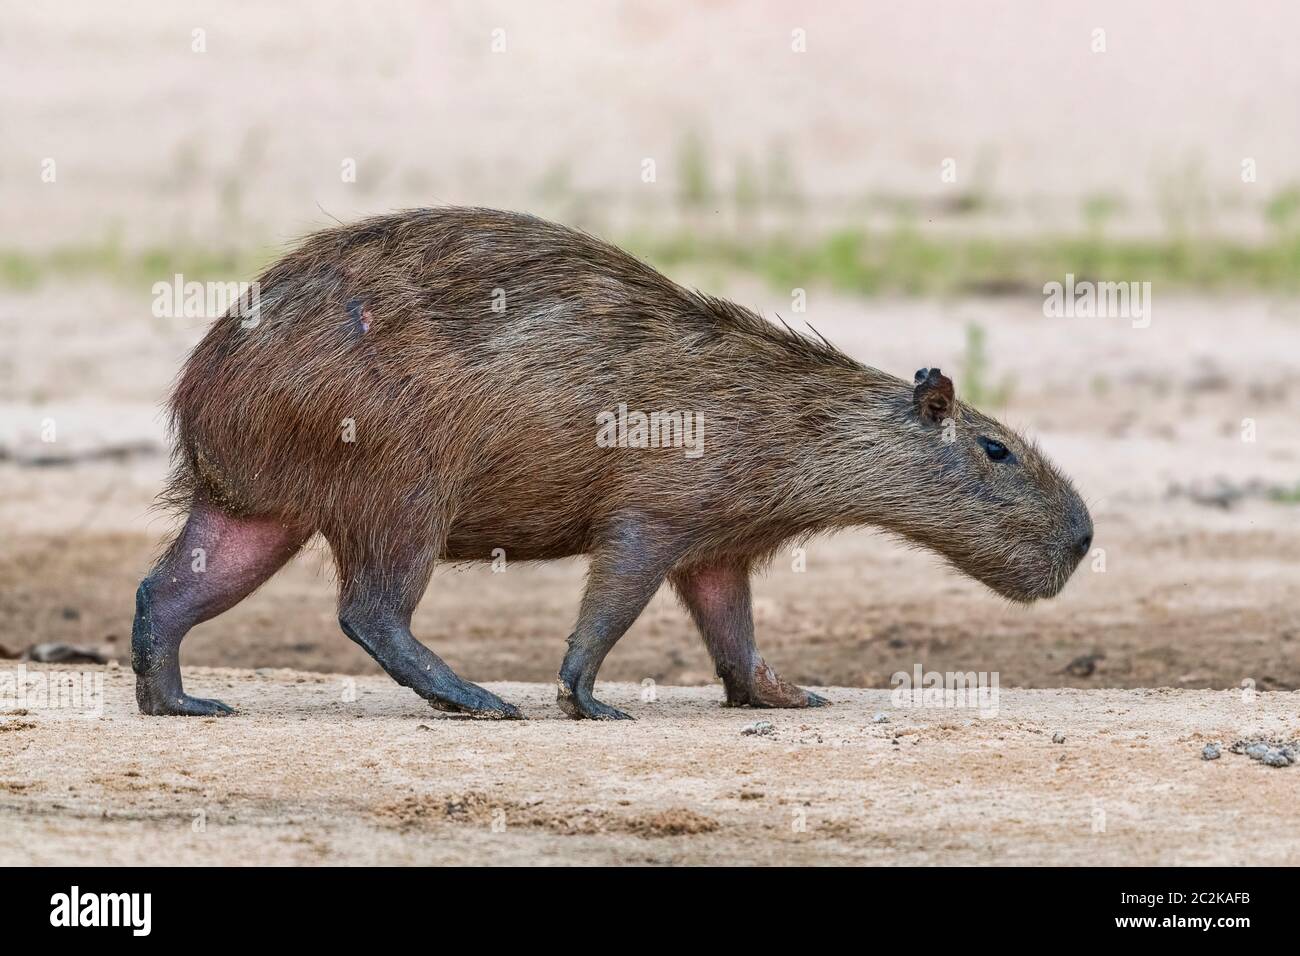 Capybara oder Wasserschwein (Hydrochoerus hydrochaeris) wandert auf einer Sandbankj, Pantanal, Mato Grosso, Brasilien Foto Stock